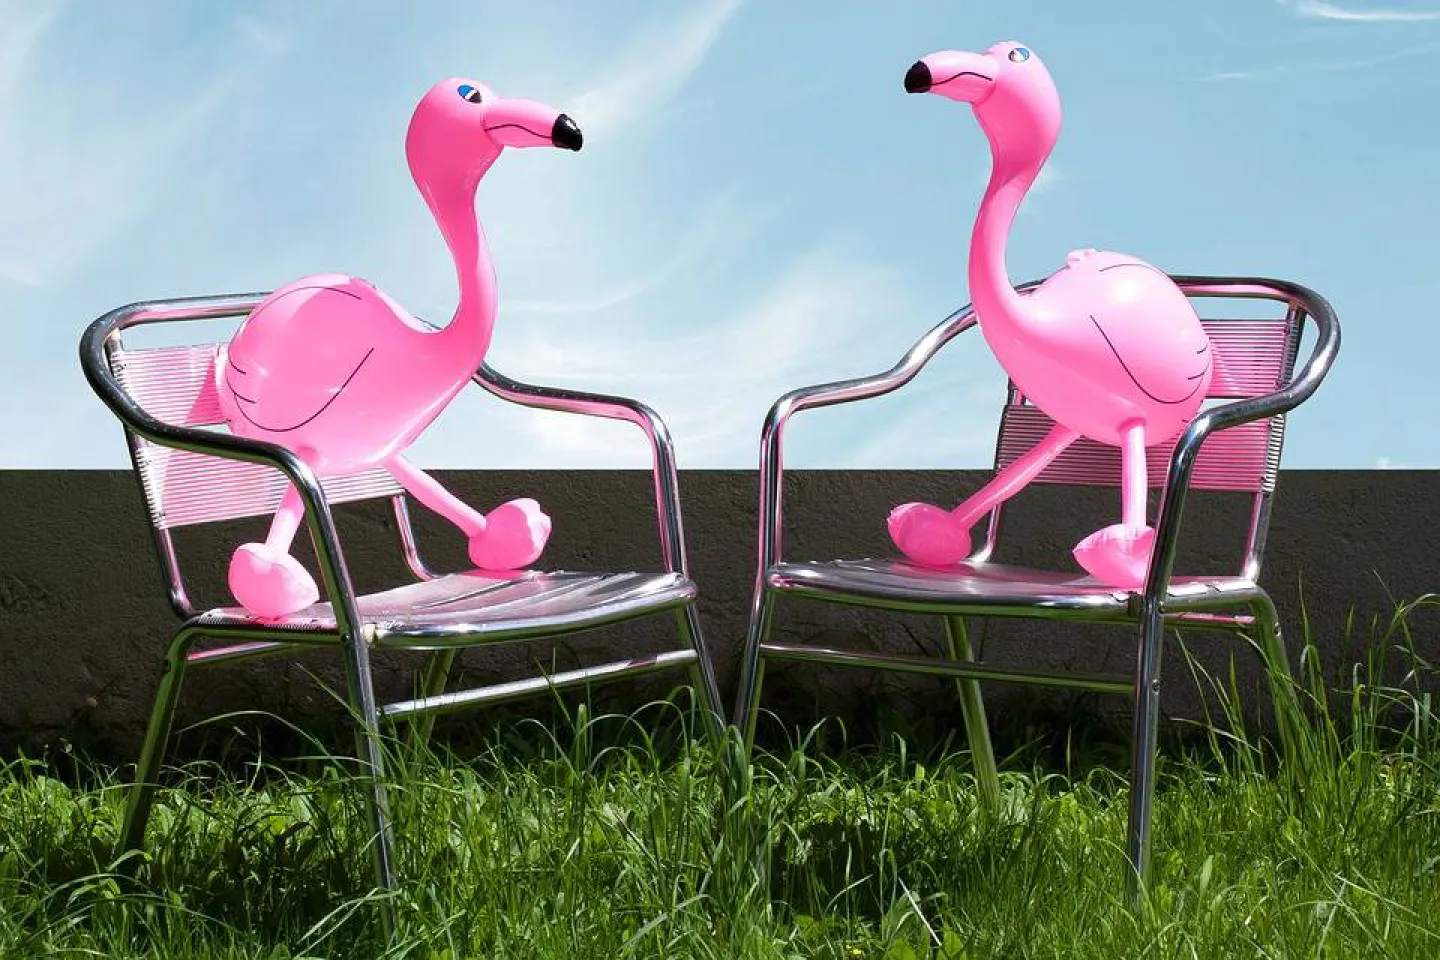 Goedekope opblaas flamingo kopen.